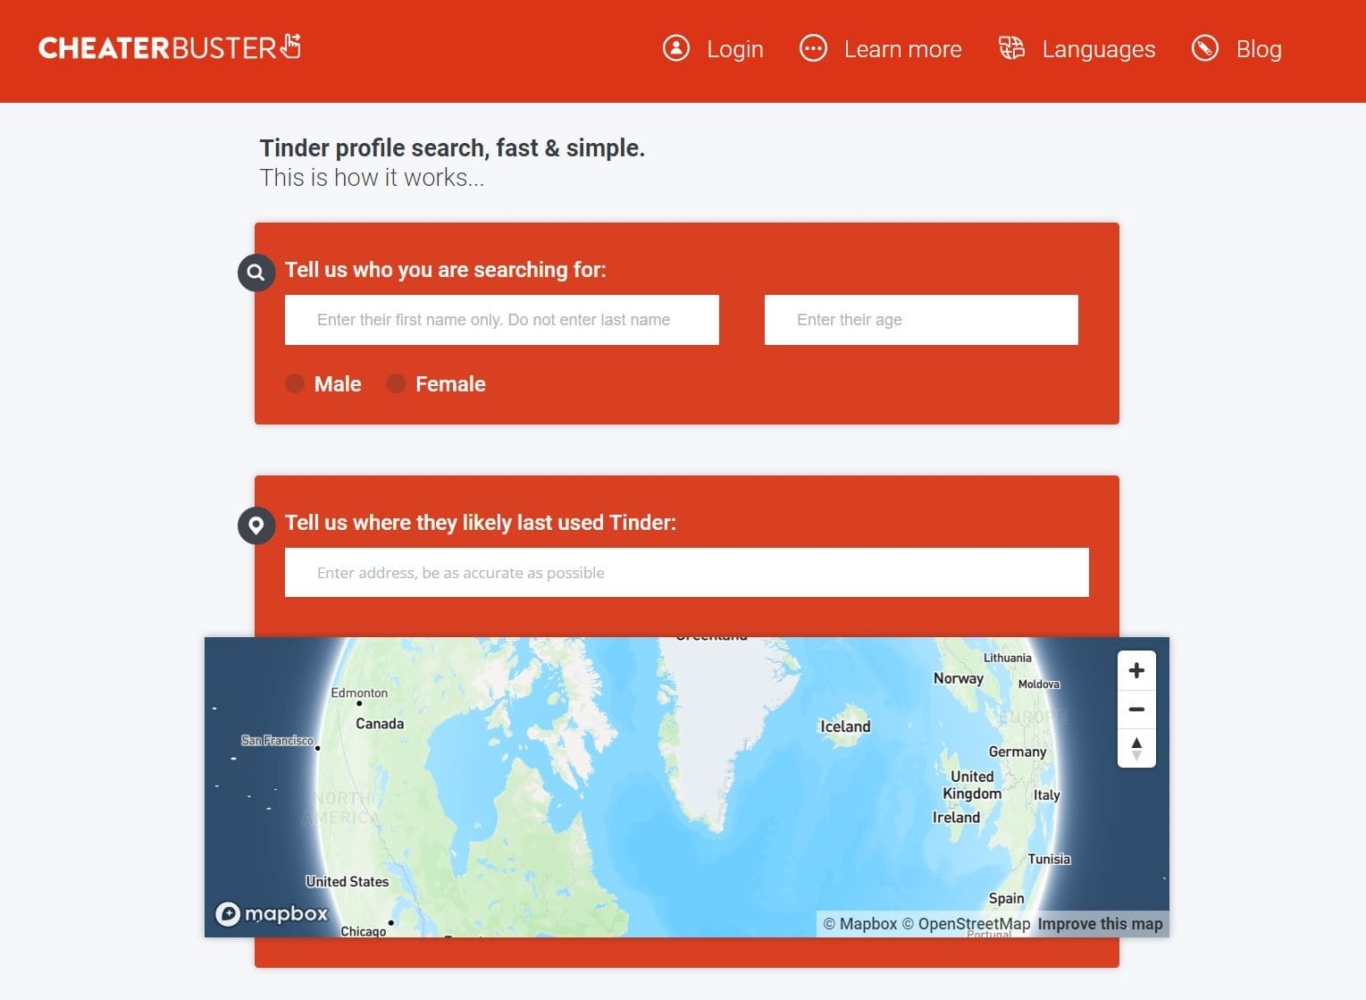 die Hauptseite der Cheaterbuster-Website, auf der Sie nach Informationen über Personen von Tinder suchen können